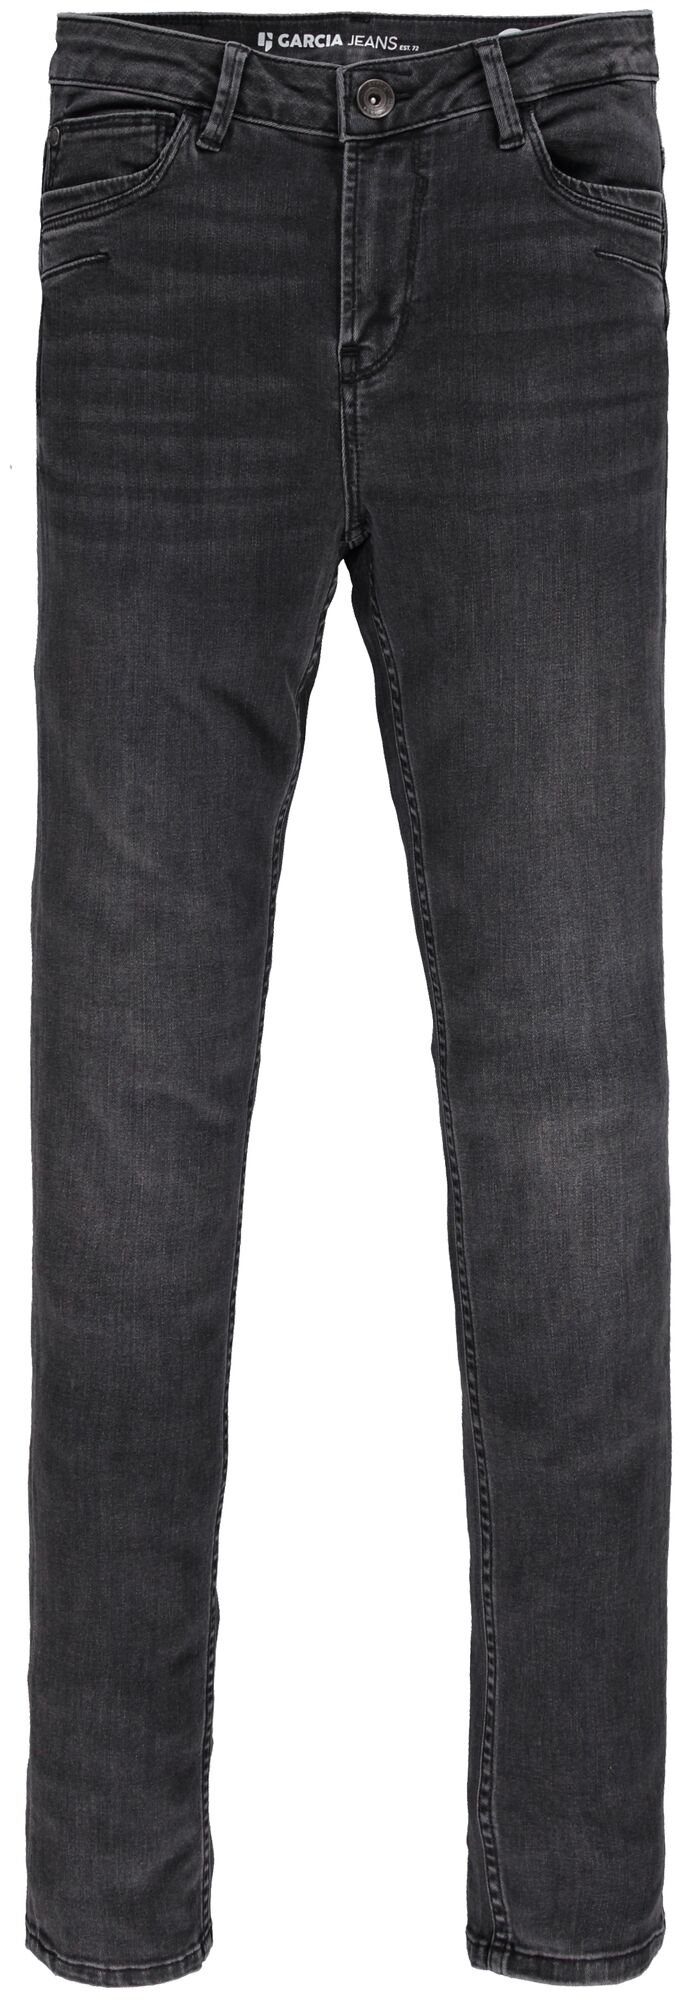 GARCIA Stretch-Jeans grey used GARCIA 244.9350 medium CELIA JEANS